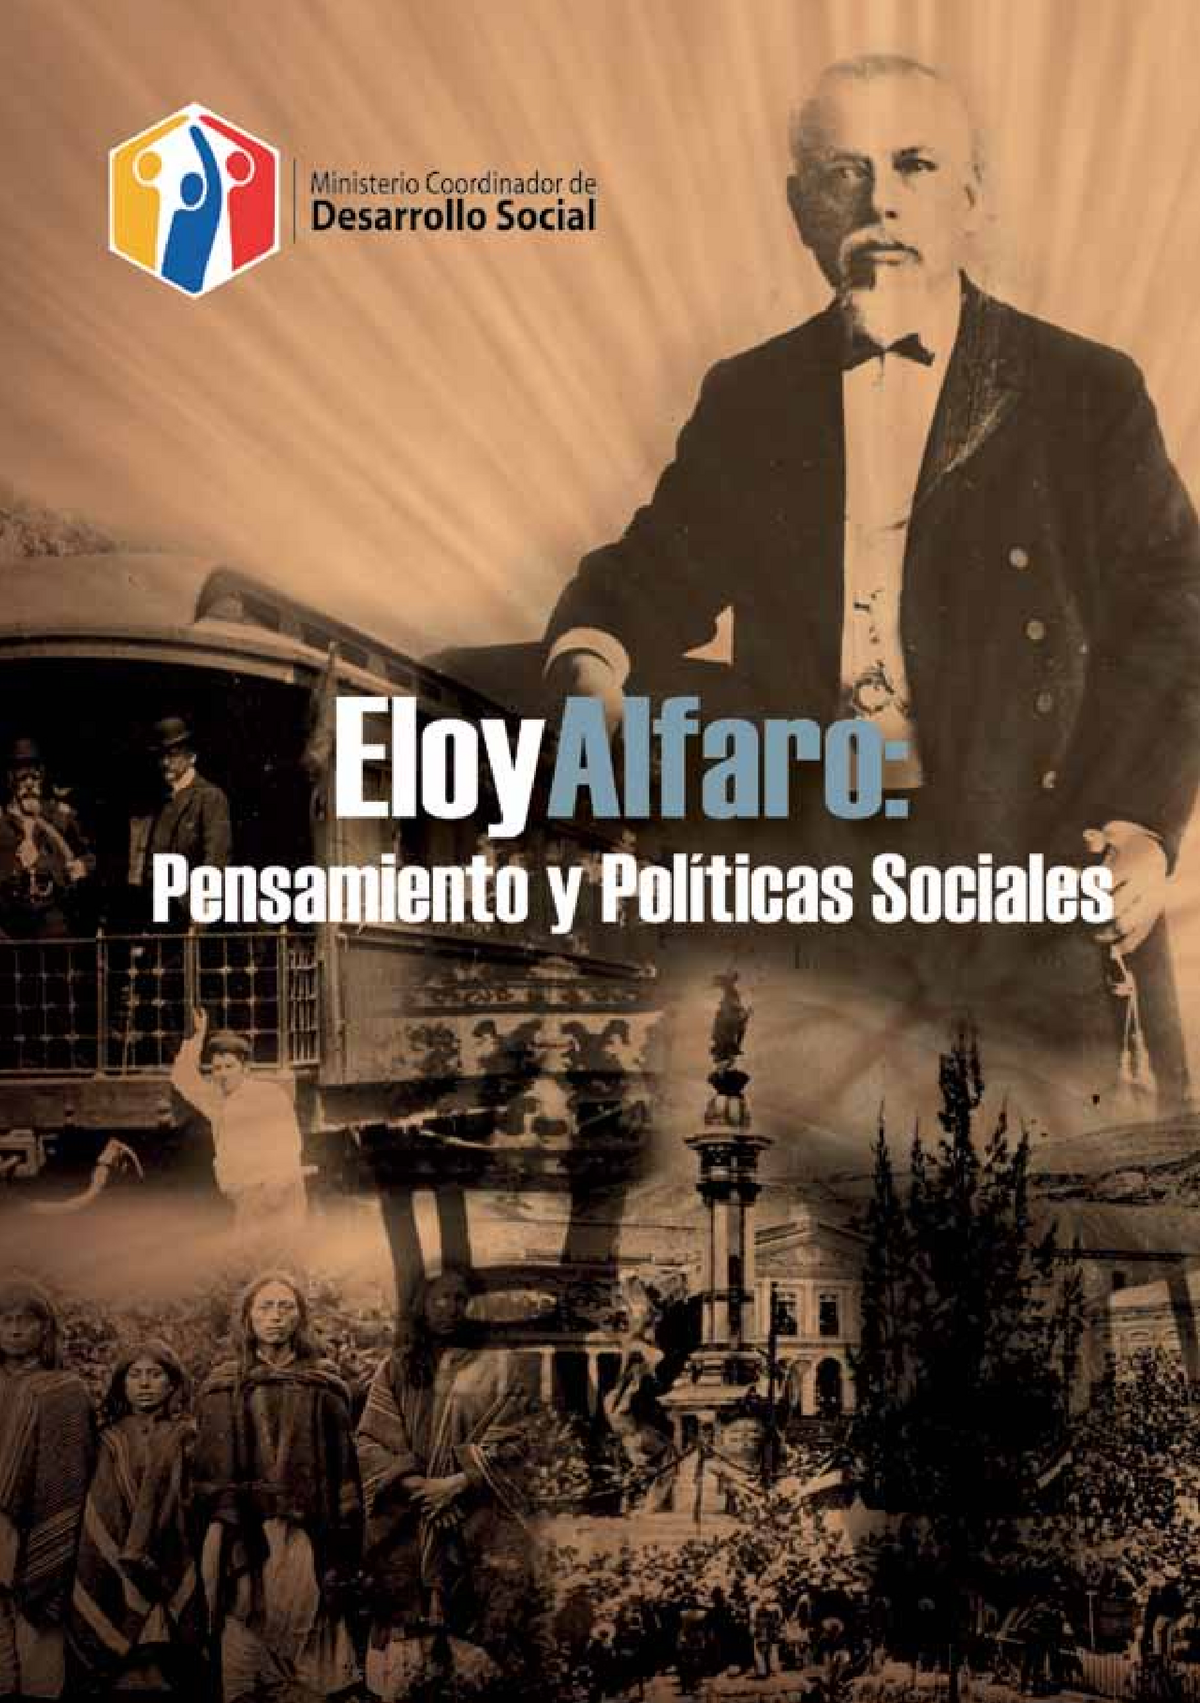 Quién recogió los restos de Eloy Alfaro? – Diario La Hora